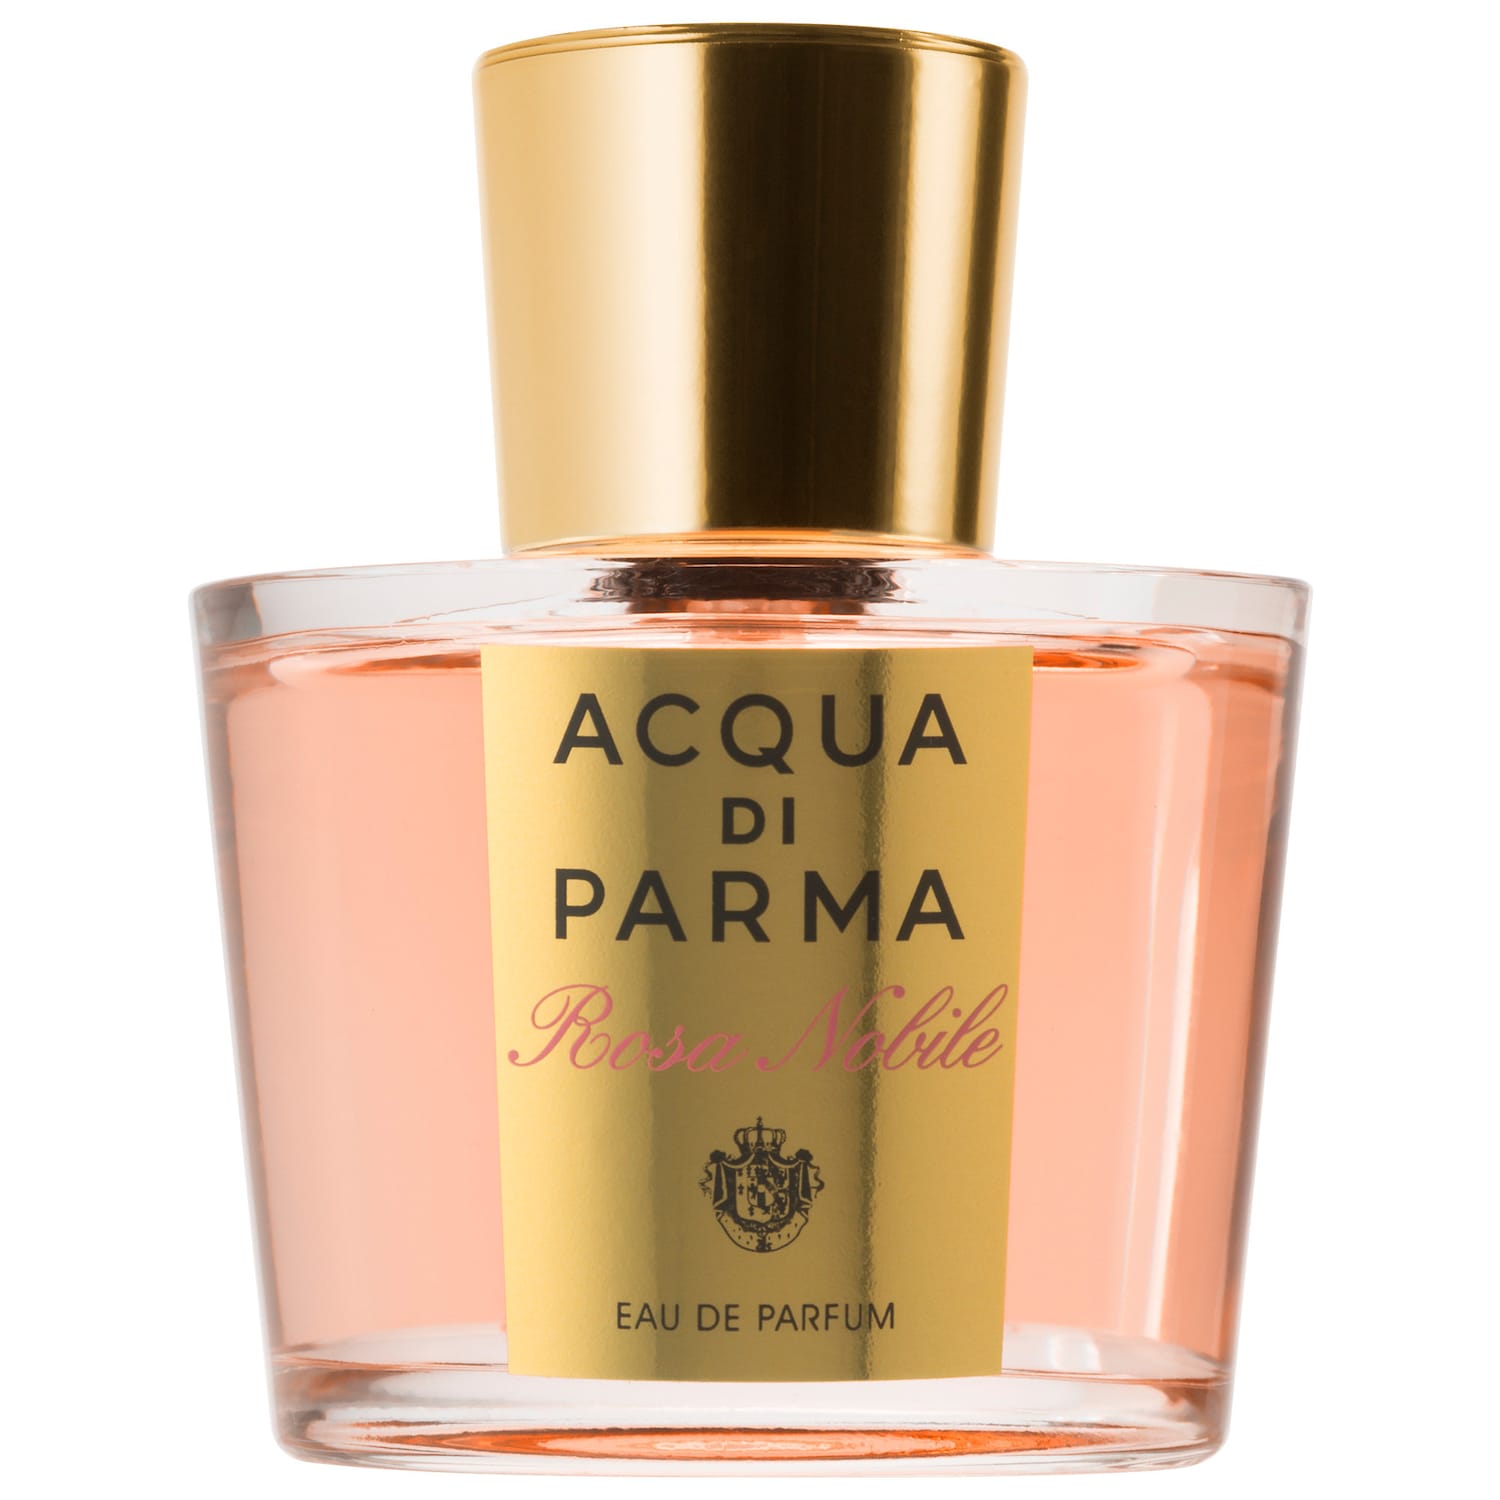 Acqua Parma Rosa Nobile Eau Parfum Women – DecantX Perfume & Cologne Decant Fragrance Samples